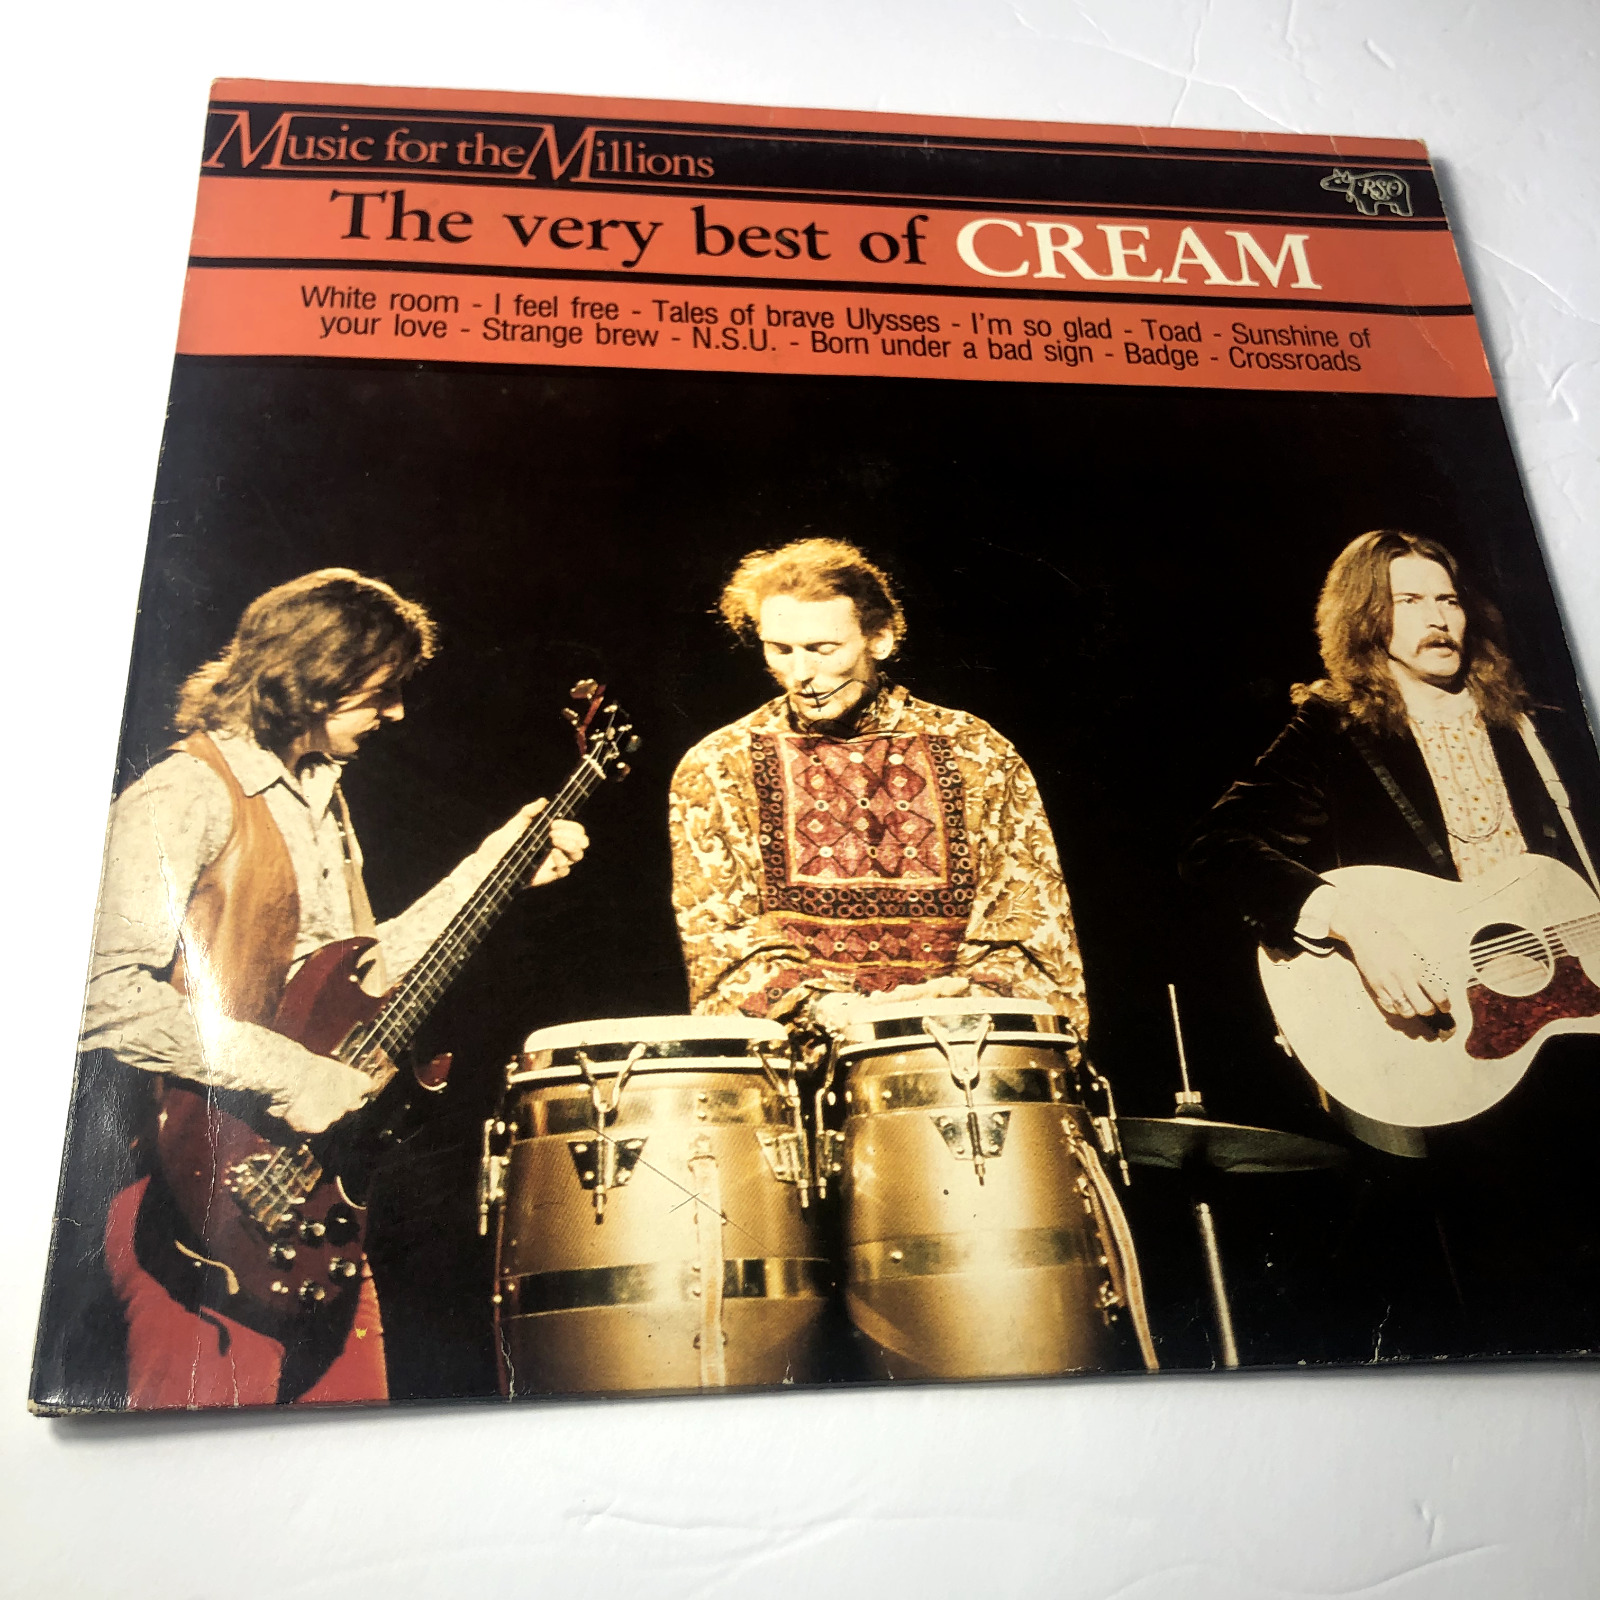 Cream The Best of Cream, RSO Records 817 172-1, VG+